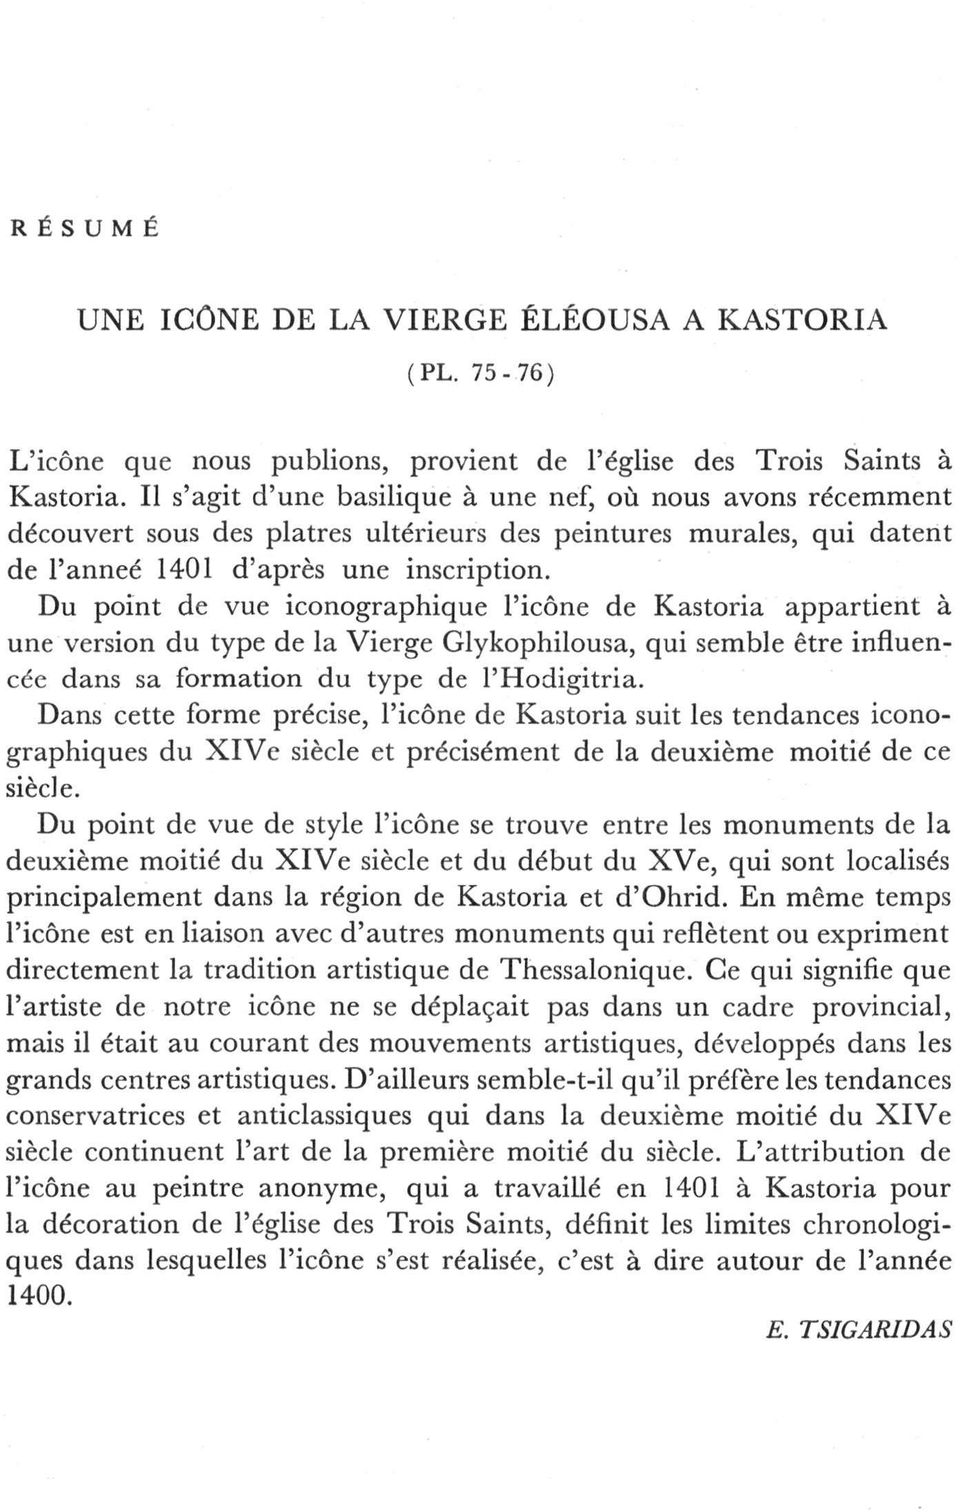 Du point de vue iconographique l'icône de Kastoria appartient à une version du type de la Vierge Glykophilousa, qui semble être influencée dans sa formation du type de l'hodigitria.